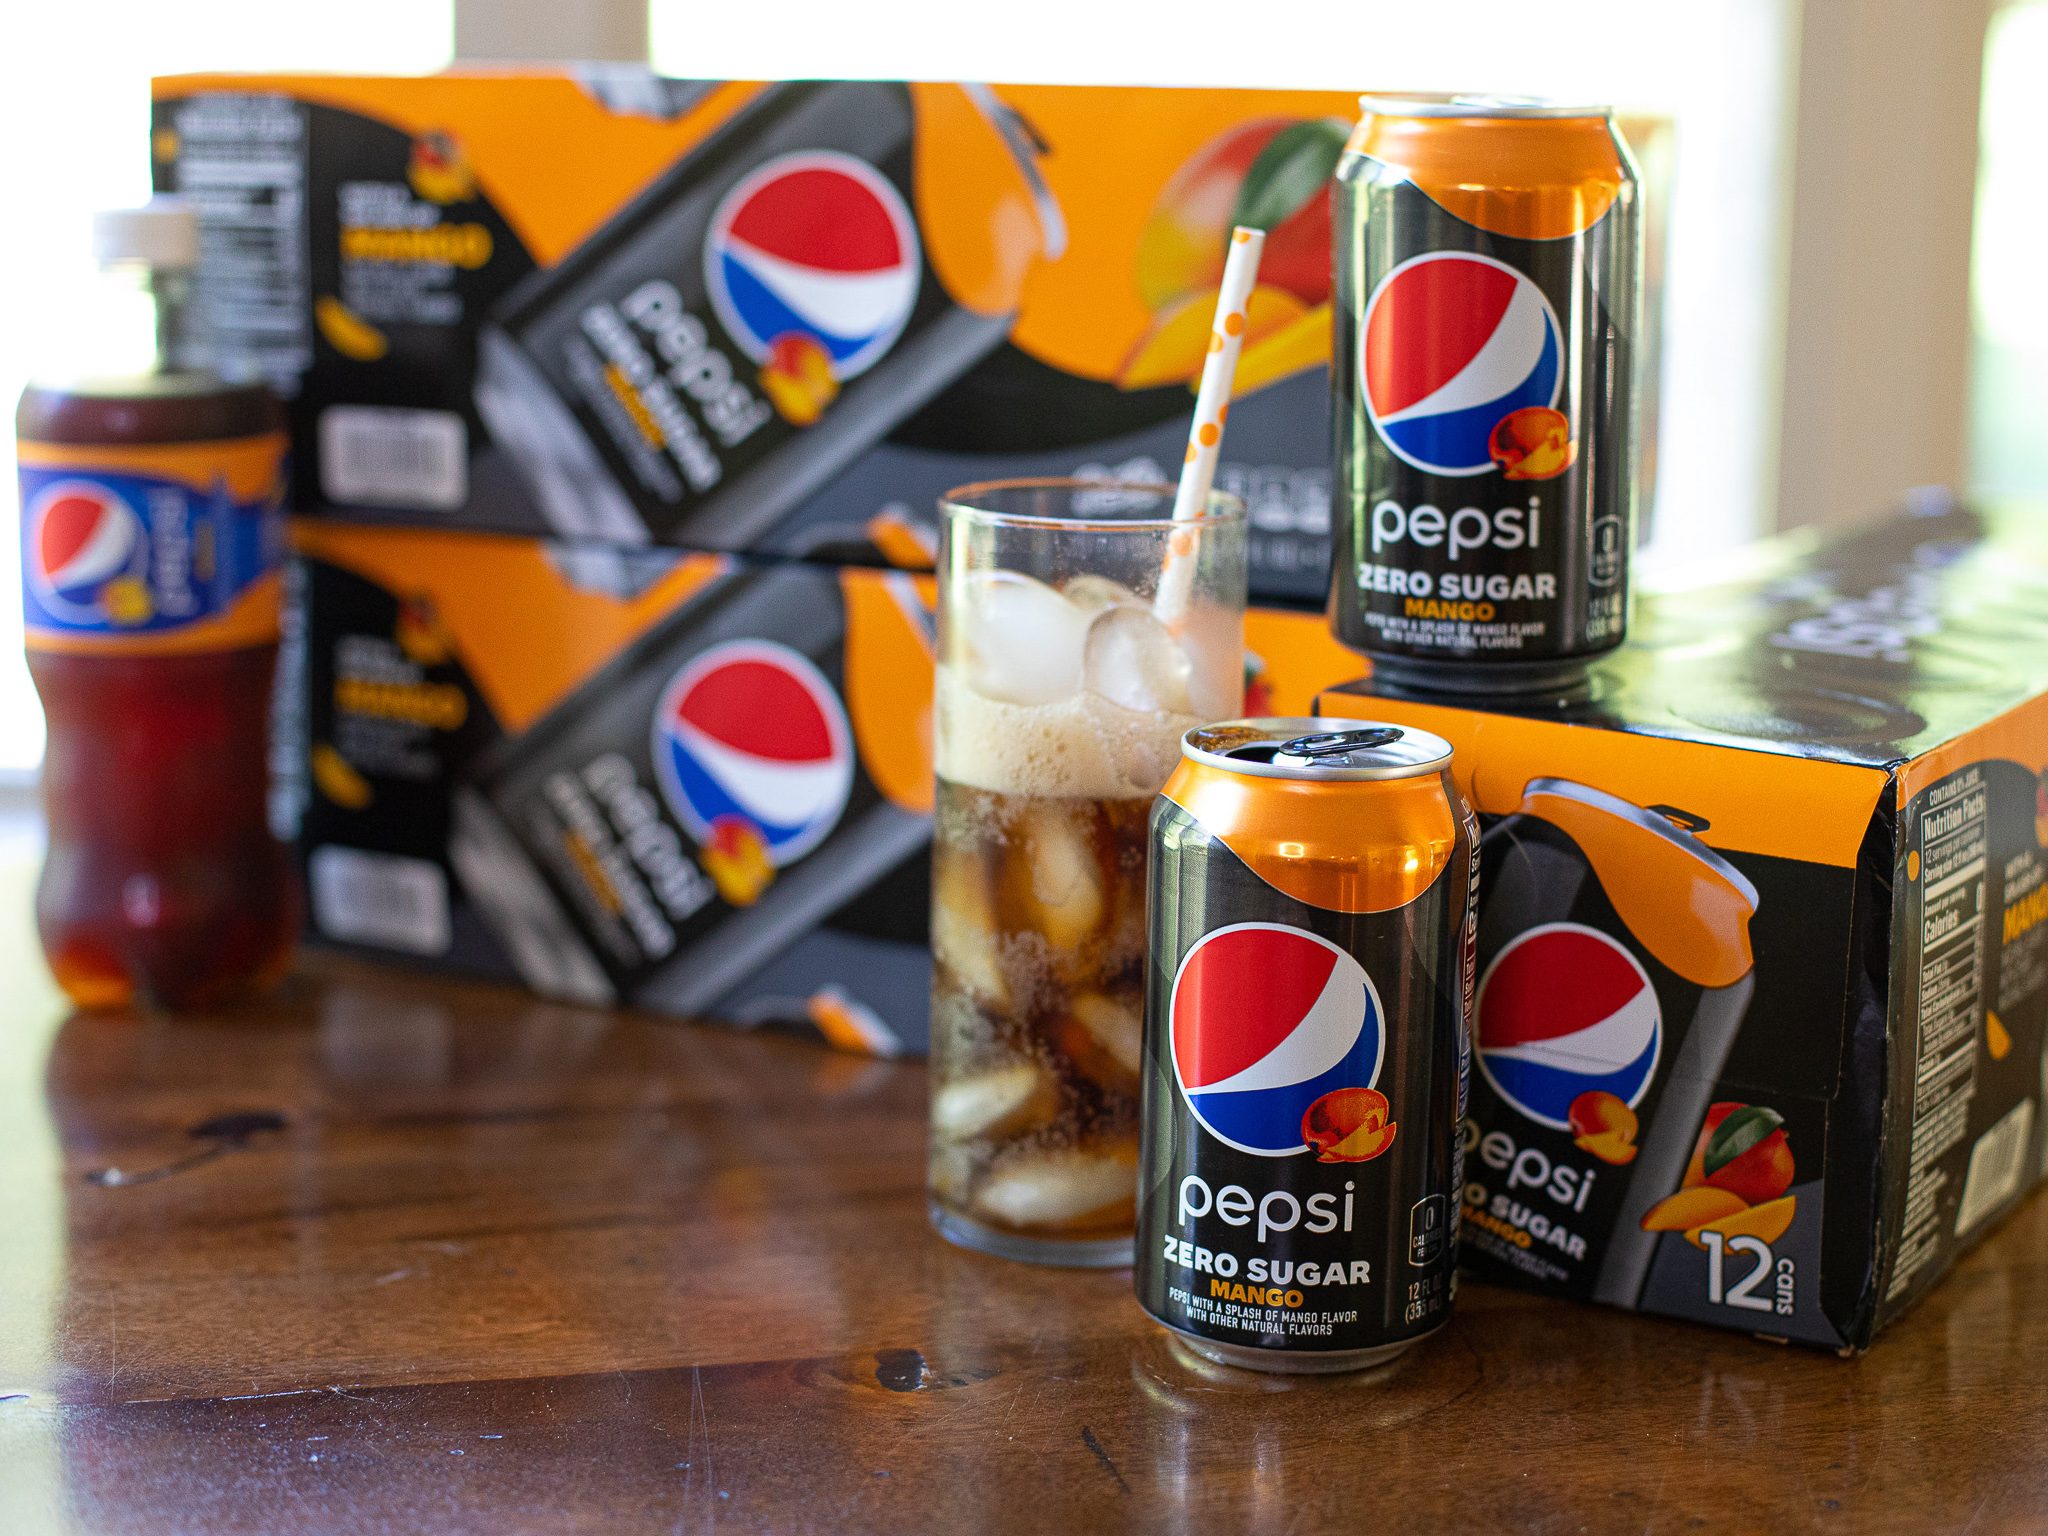 Pepsi Zero Sugar 12-Packs For Just $3.29. At Kroger